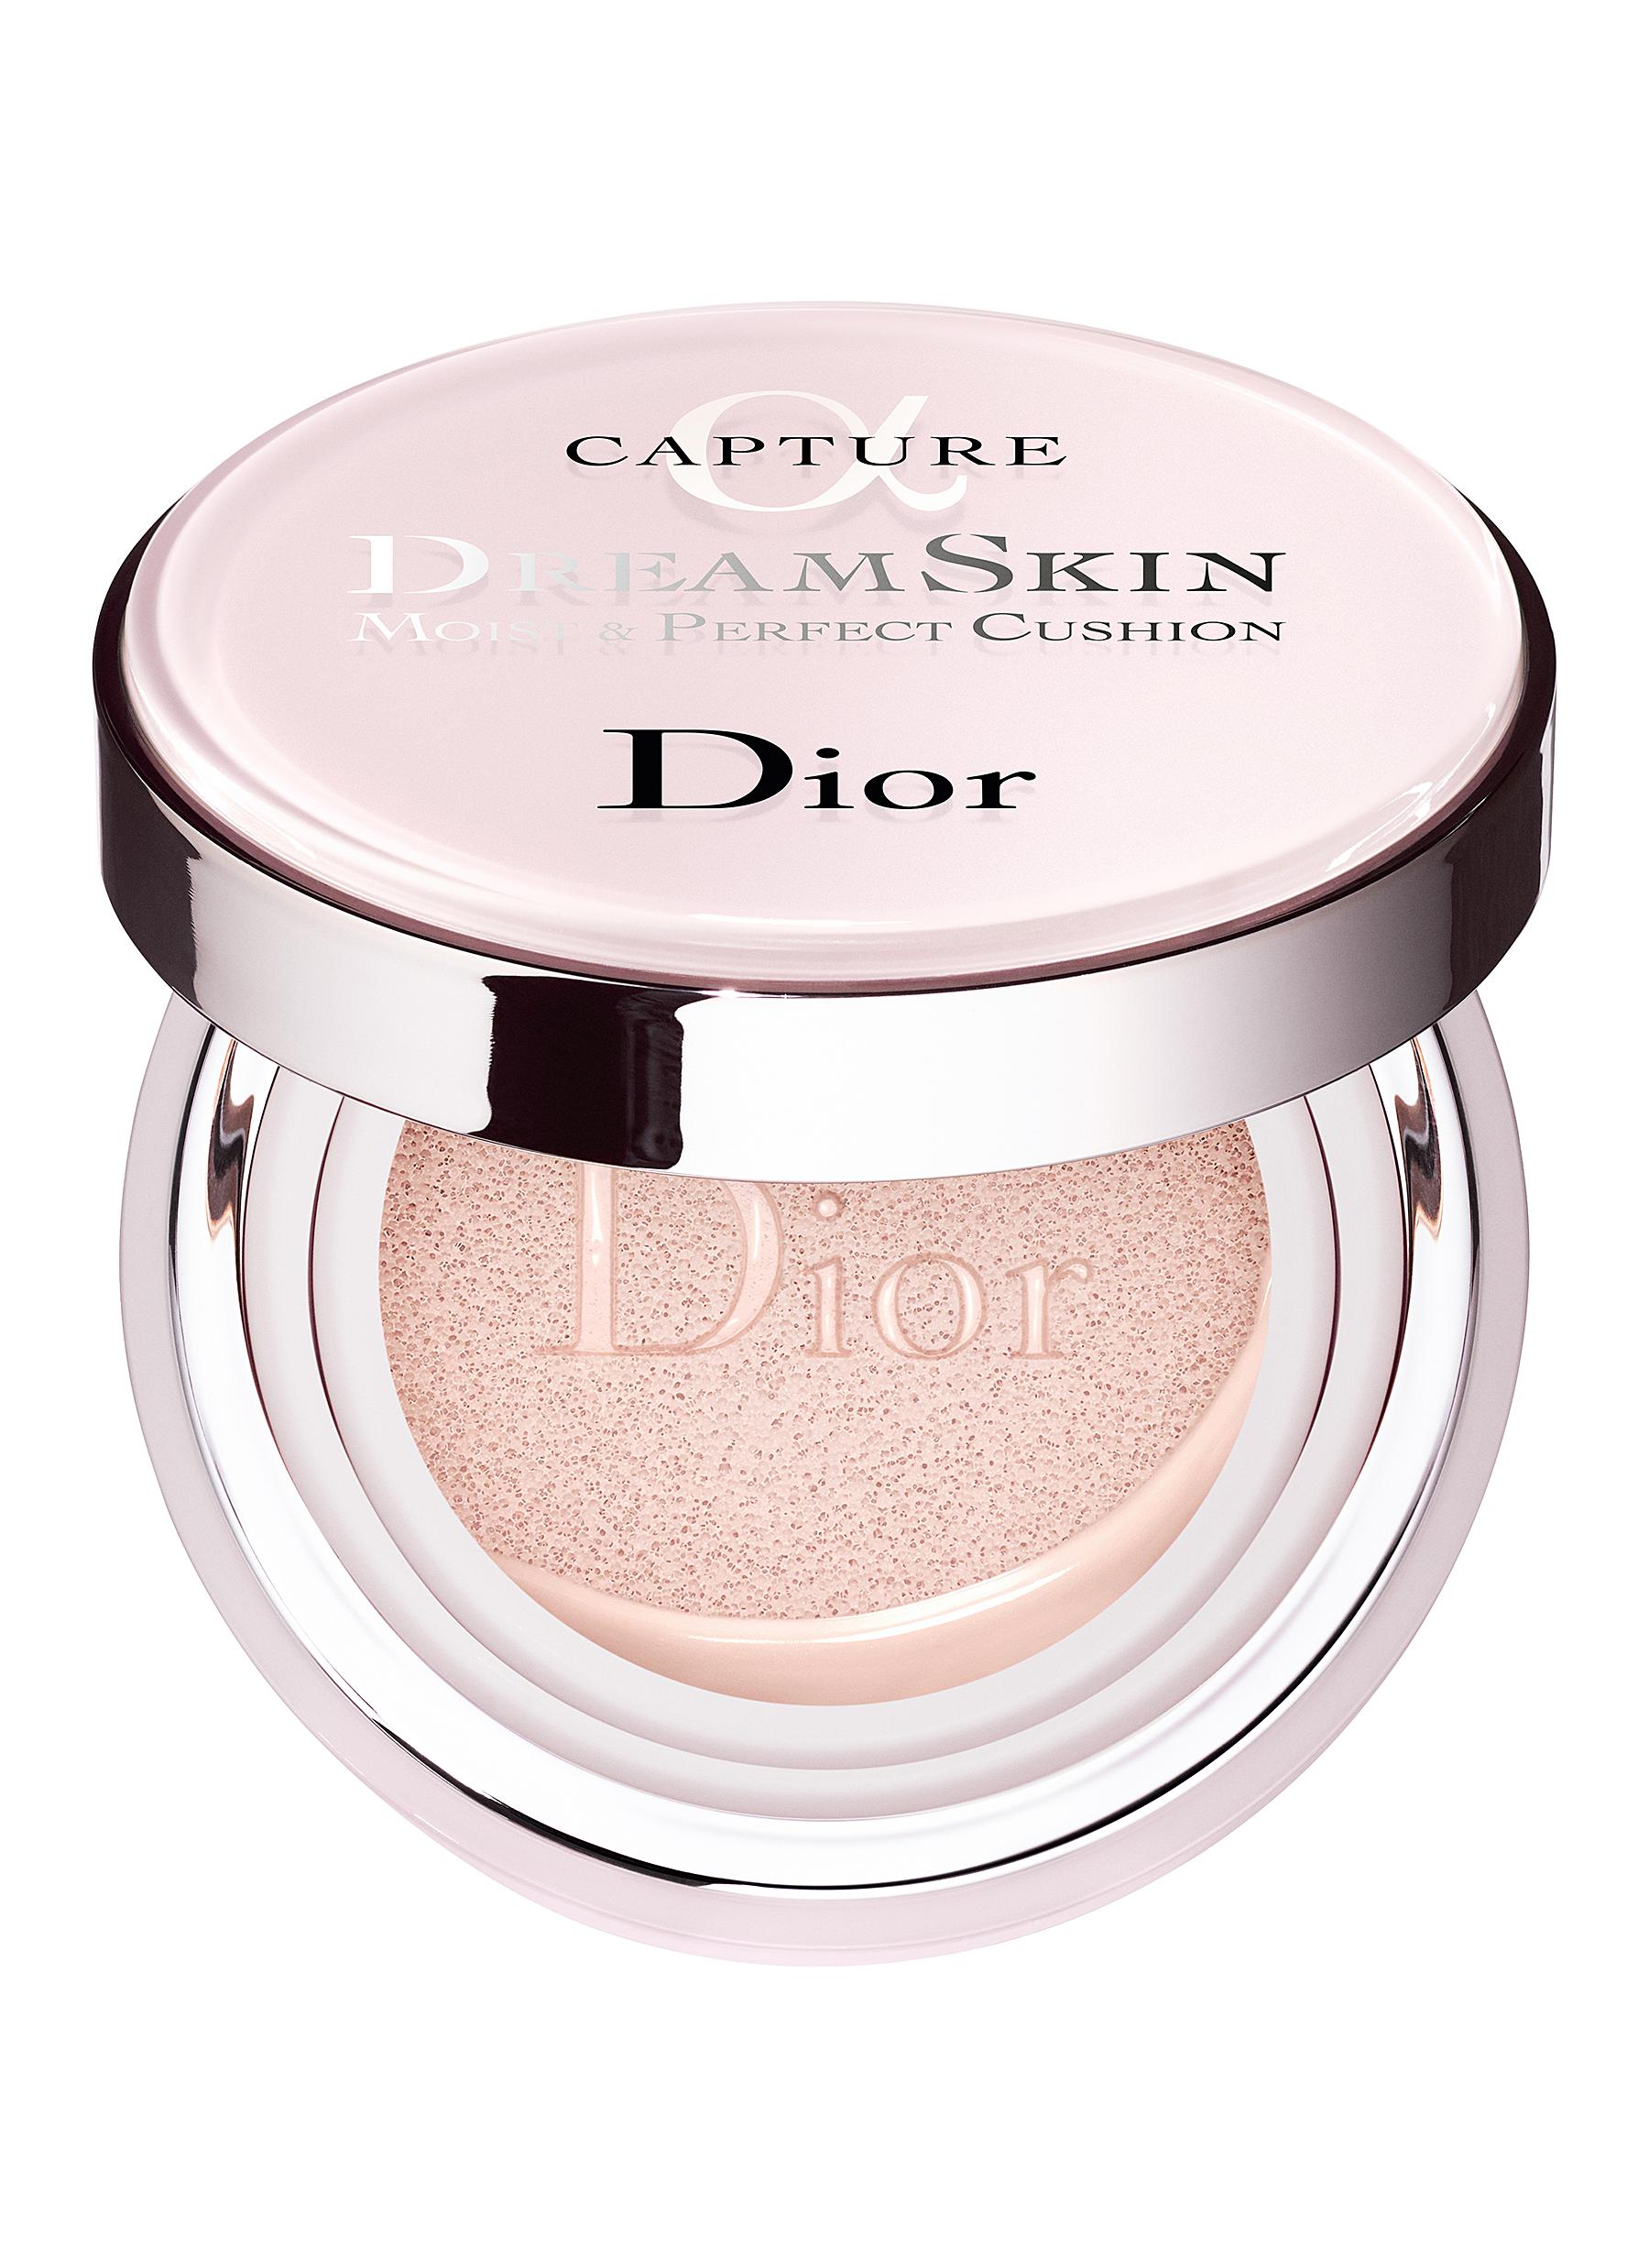 Review phấn mắt Dior và bảng màu đẹp nhất hiện nay